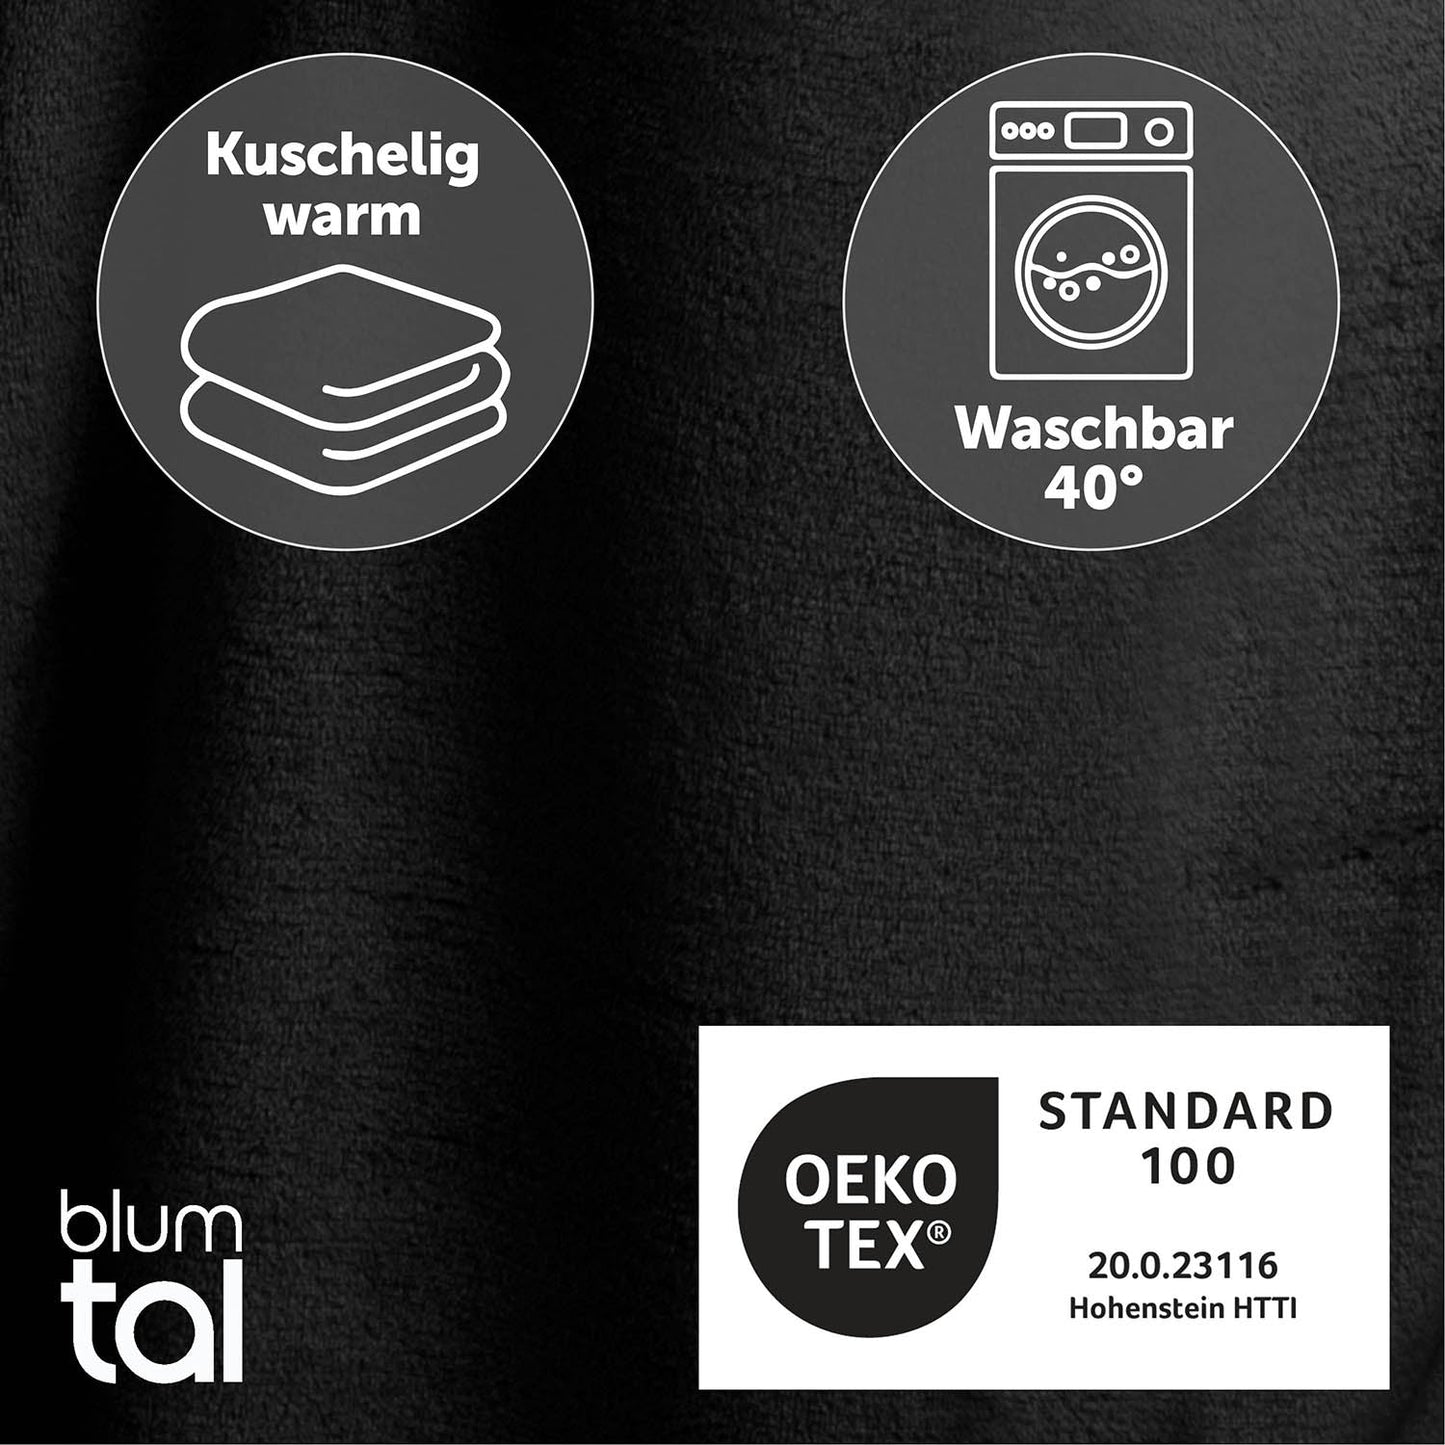 Detailansicht des schwarz flauschigen Stoffes mit Symbolen für Kuschelwärme und Waschbarkeit bei 40 Grad sowie OEKO-TEX Standard 100 Zertifizierung.